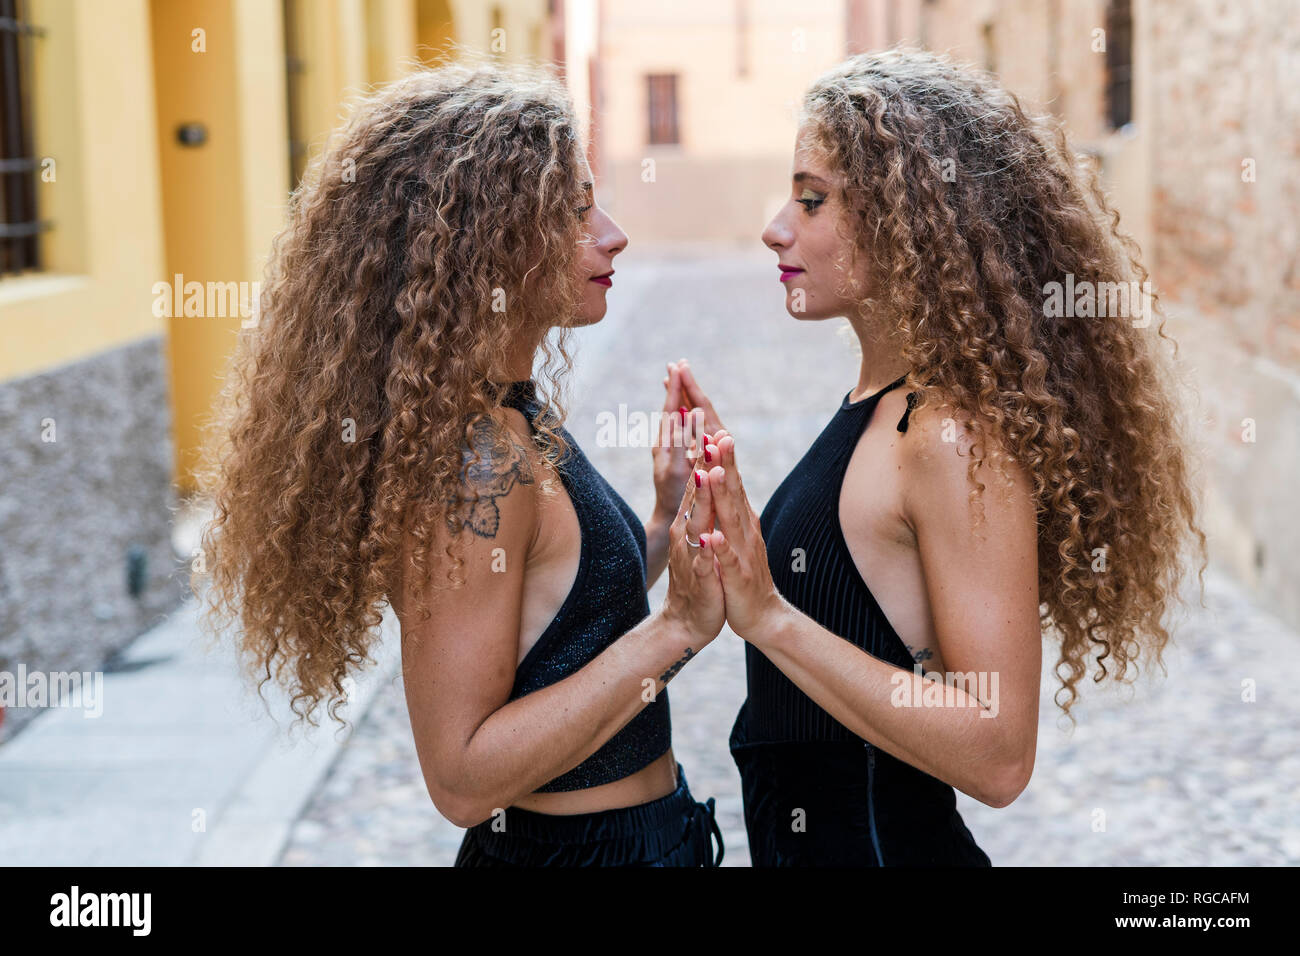 Vue latérale des deux sœurs face à face permanent touchant Banque D'Images